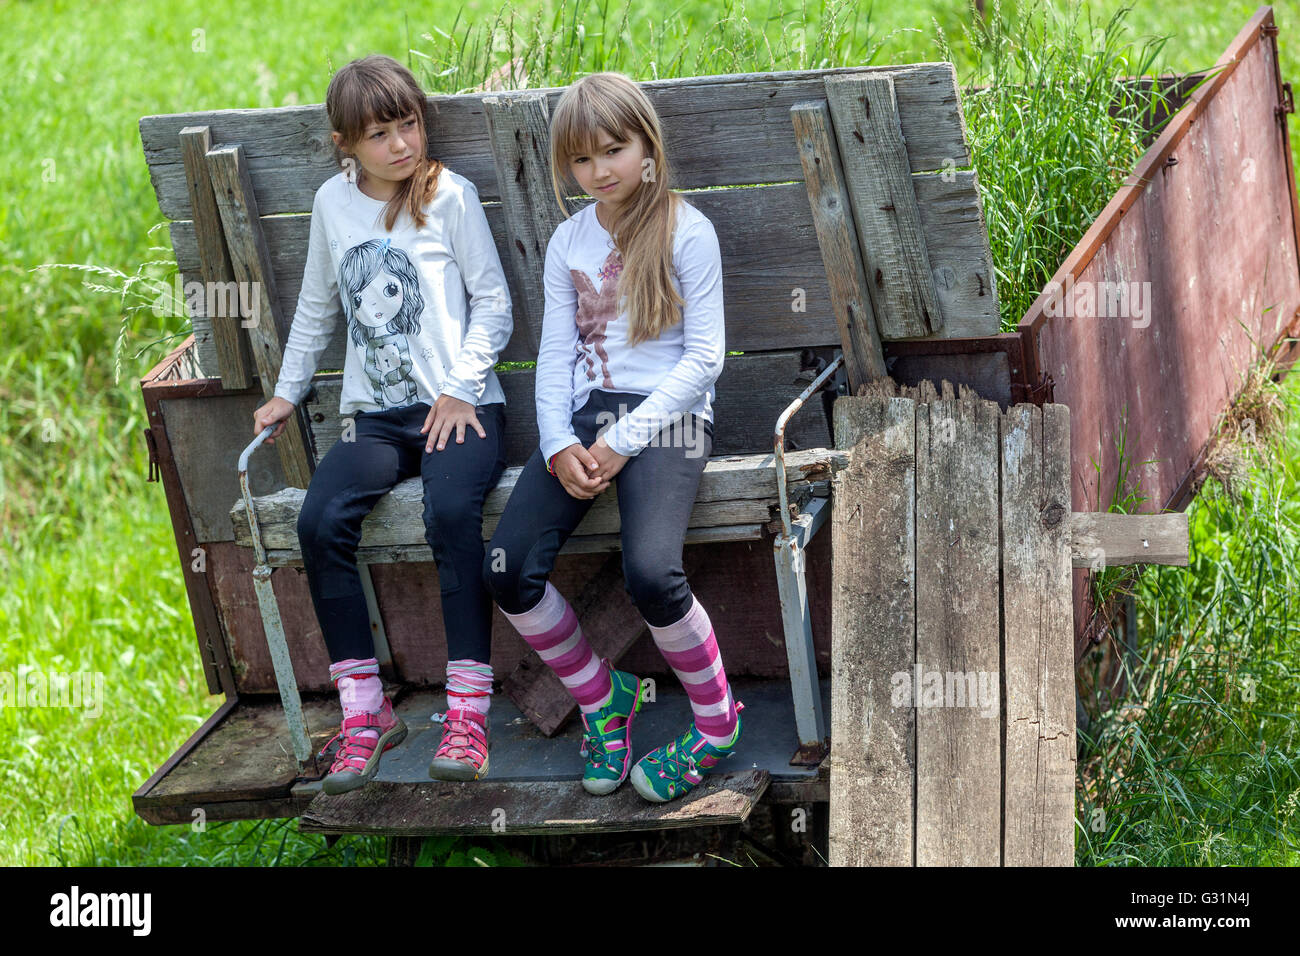 Zwei Mädchen, die sechs sieben Jahre alt sind, in einem Sommerkleid, sitzen auf einem alten Pritschenbett Stockfoto